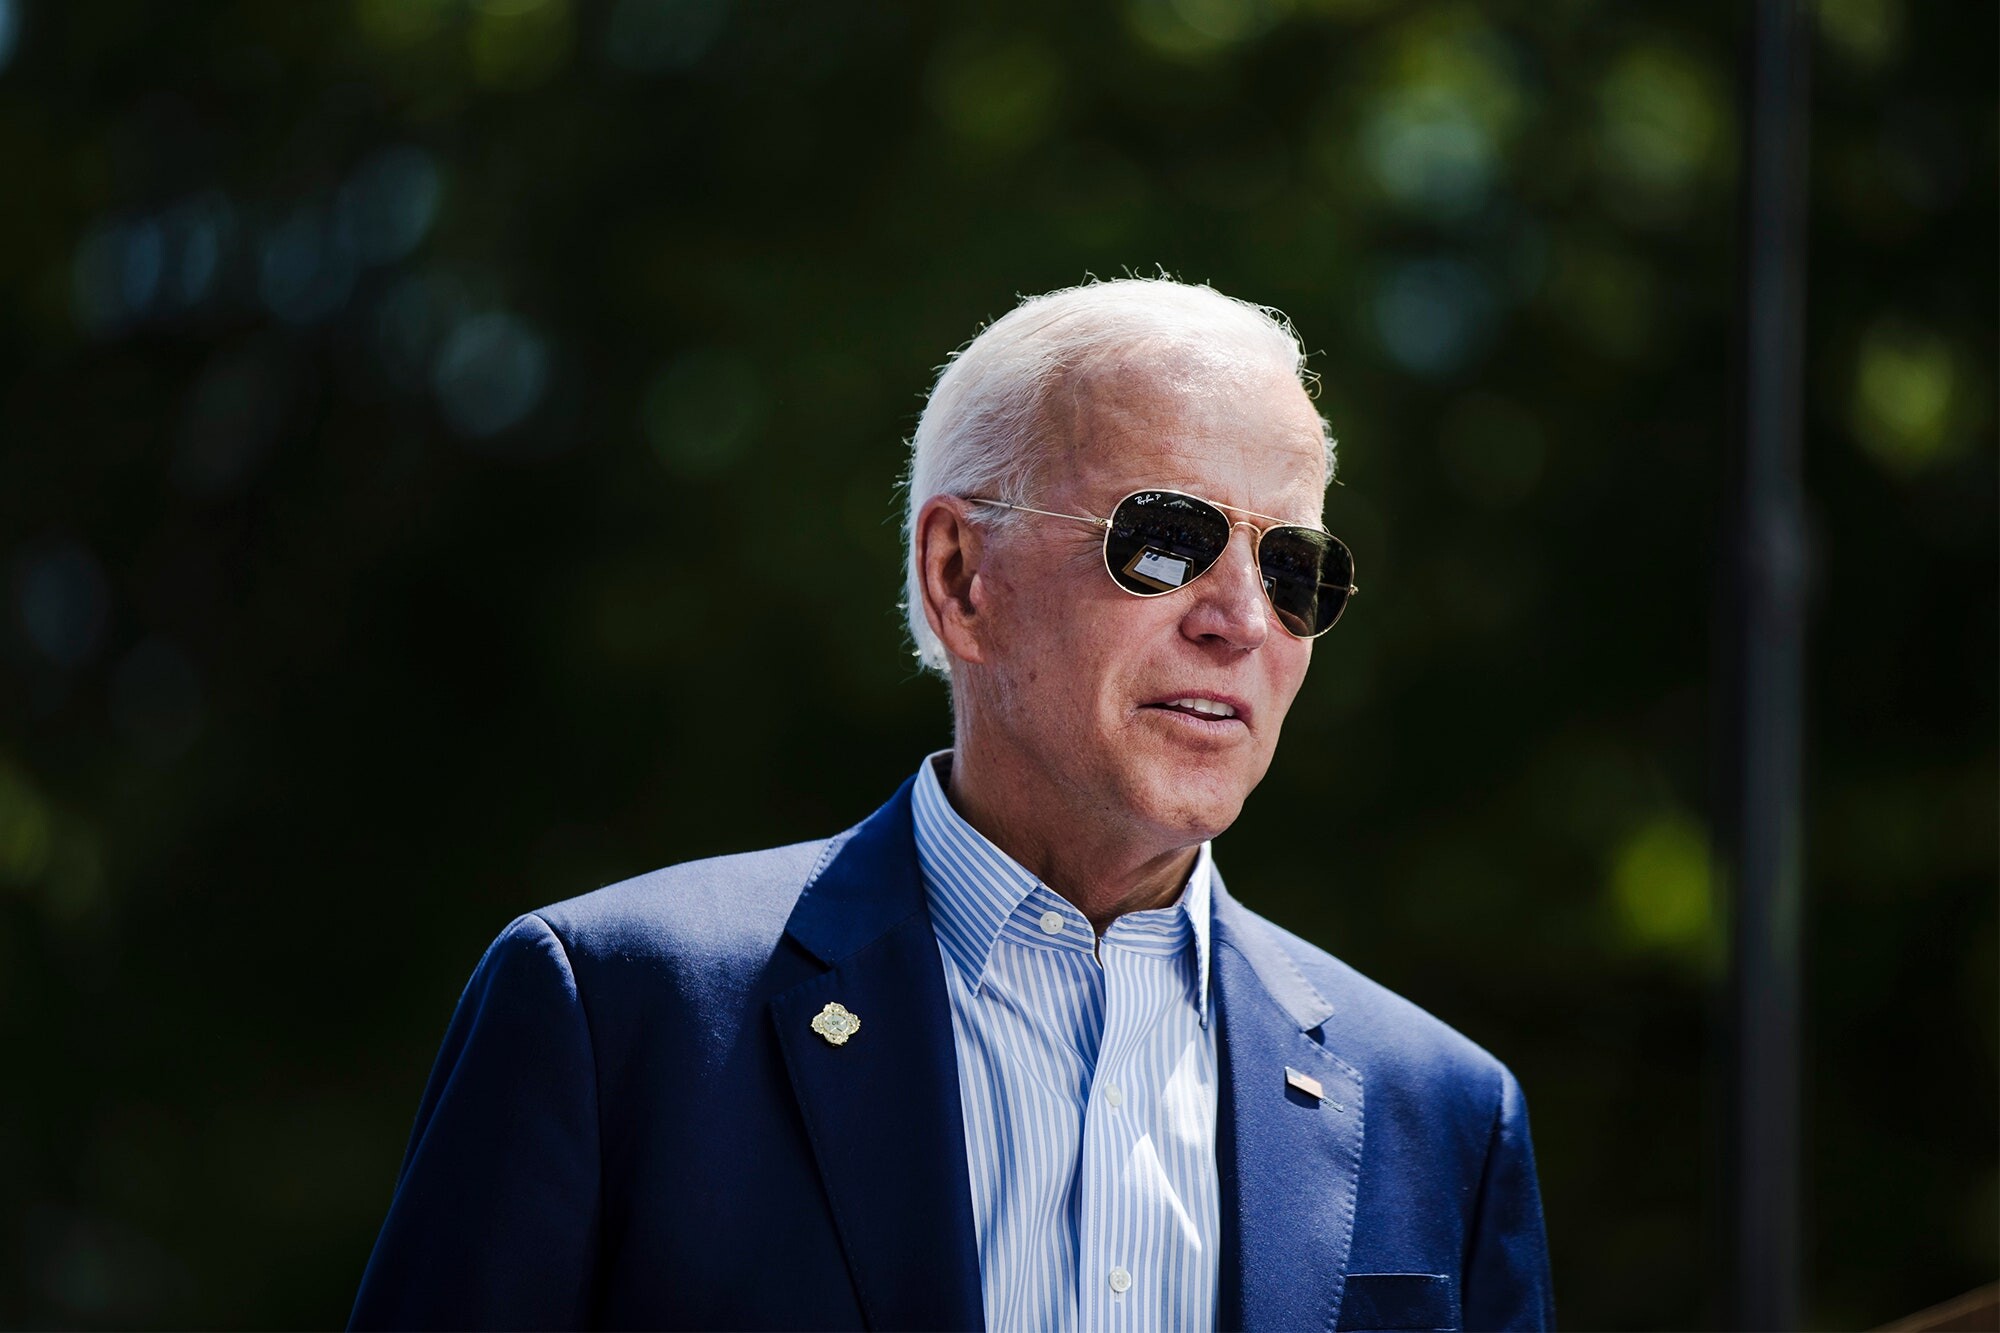 Joe Biden slibuje uklidnění rozvášněných emocí. Jaký bude prezident pro Ameriku, svět i investory?